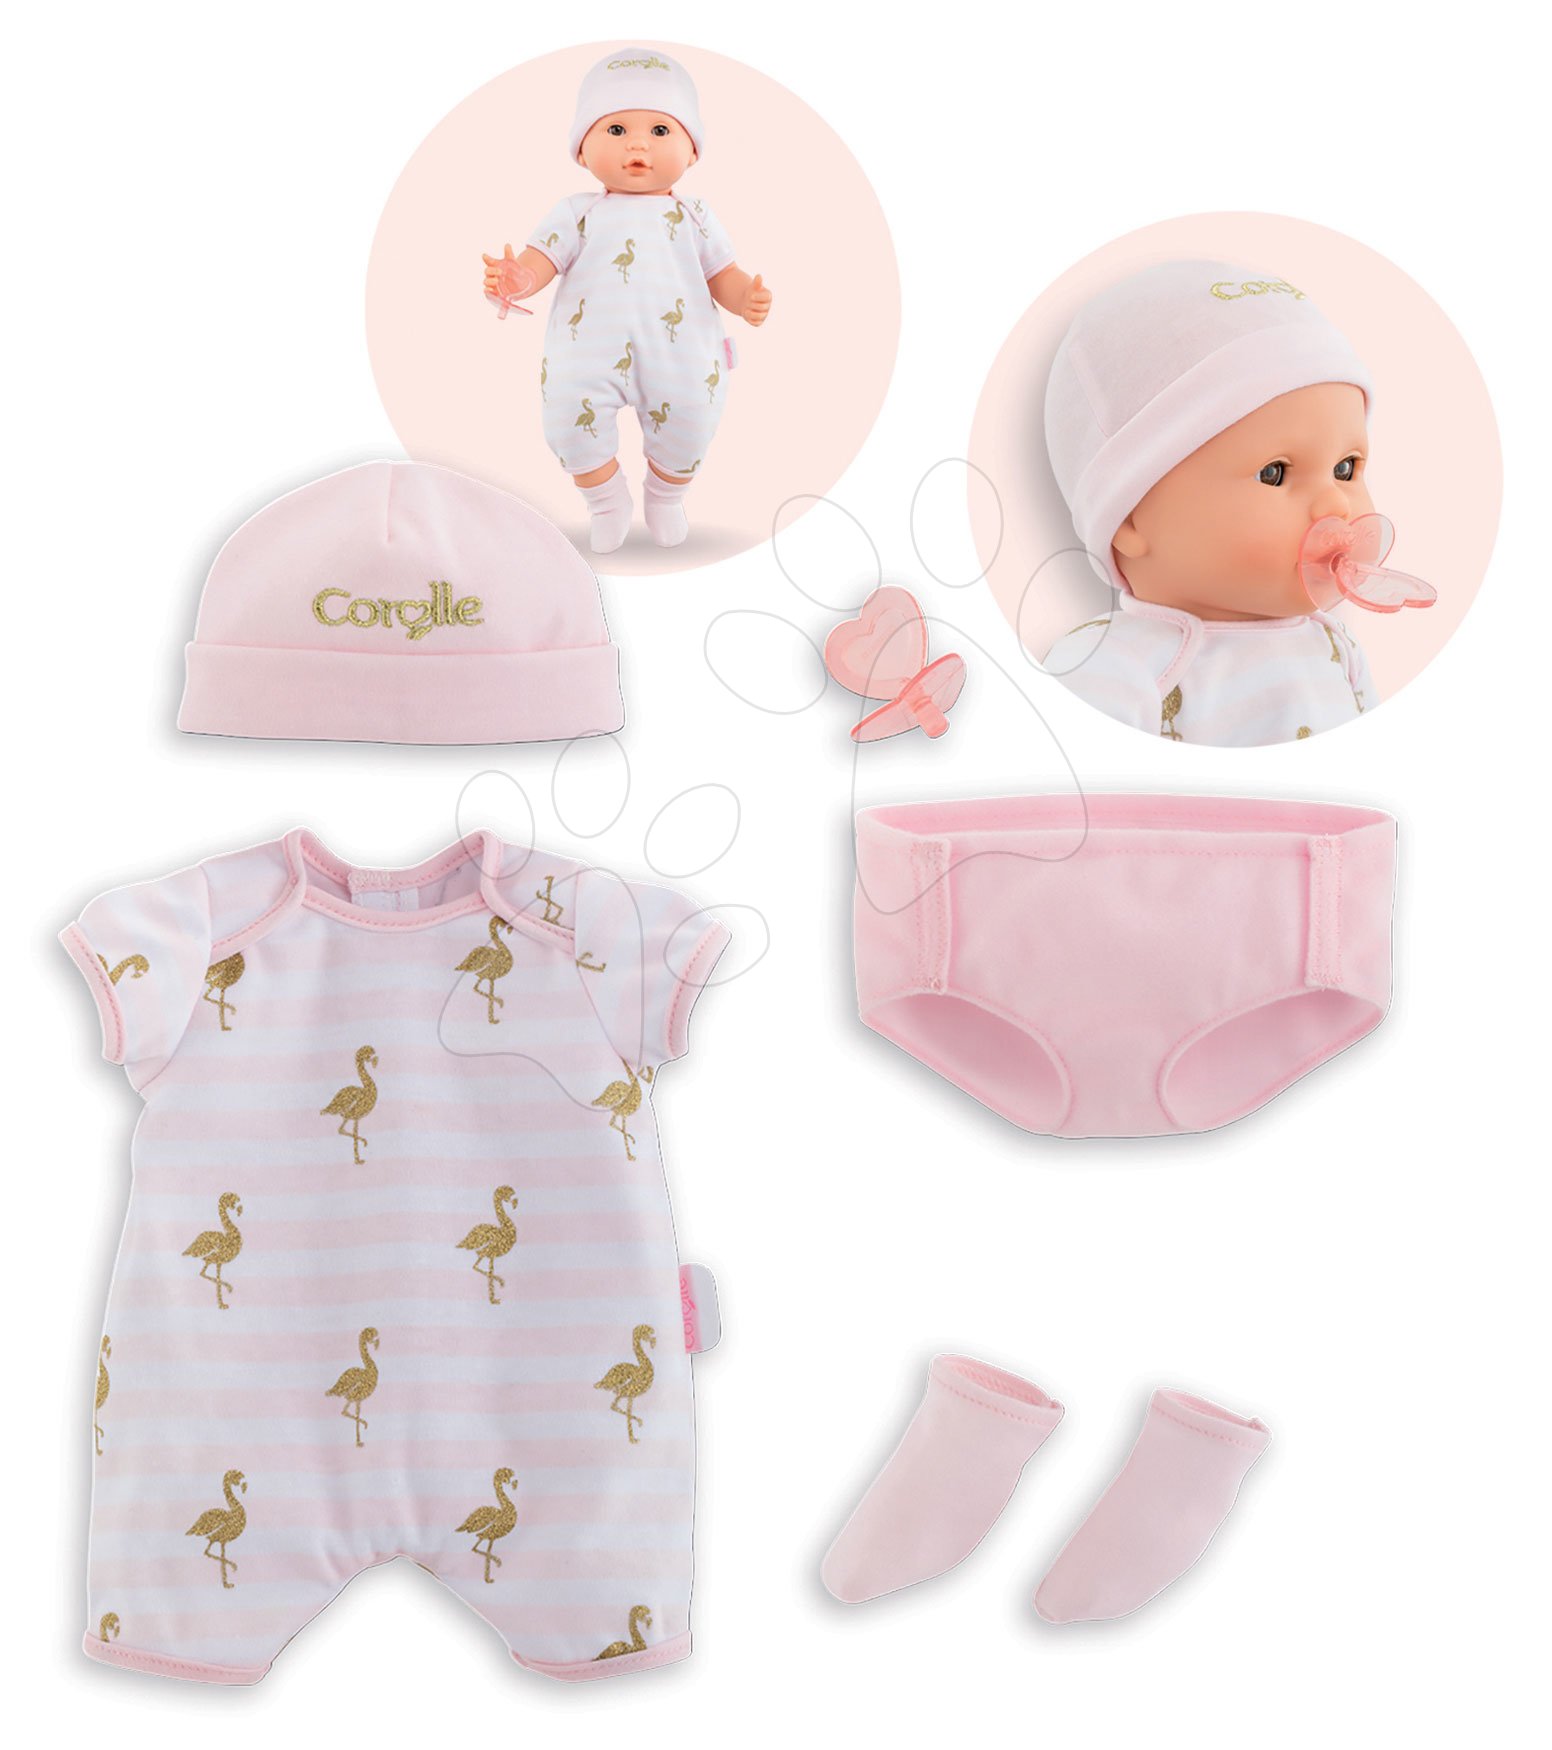 Játékbaba ruhák - Ruha szett Layette set Mon Grand Poupon Corolle 36 cm játékbaba részére 24 hó-tól